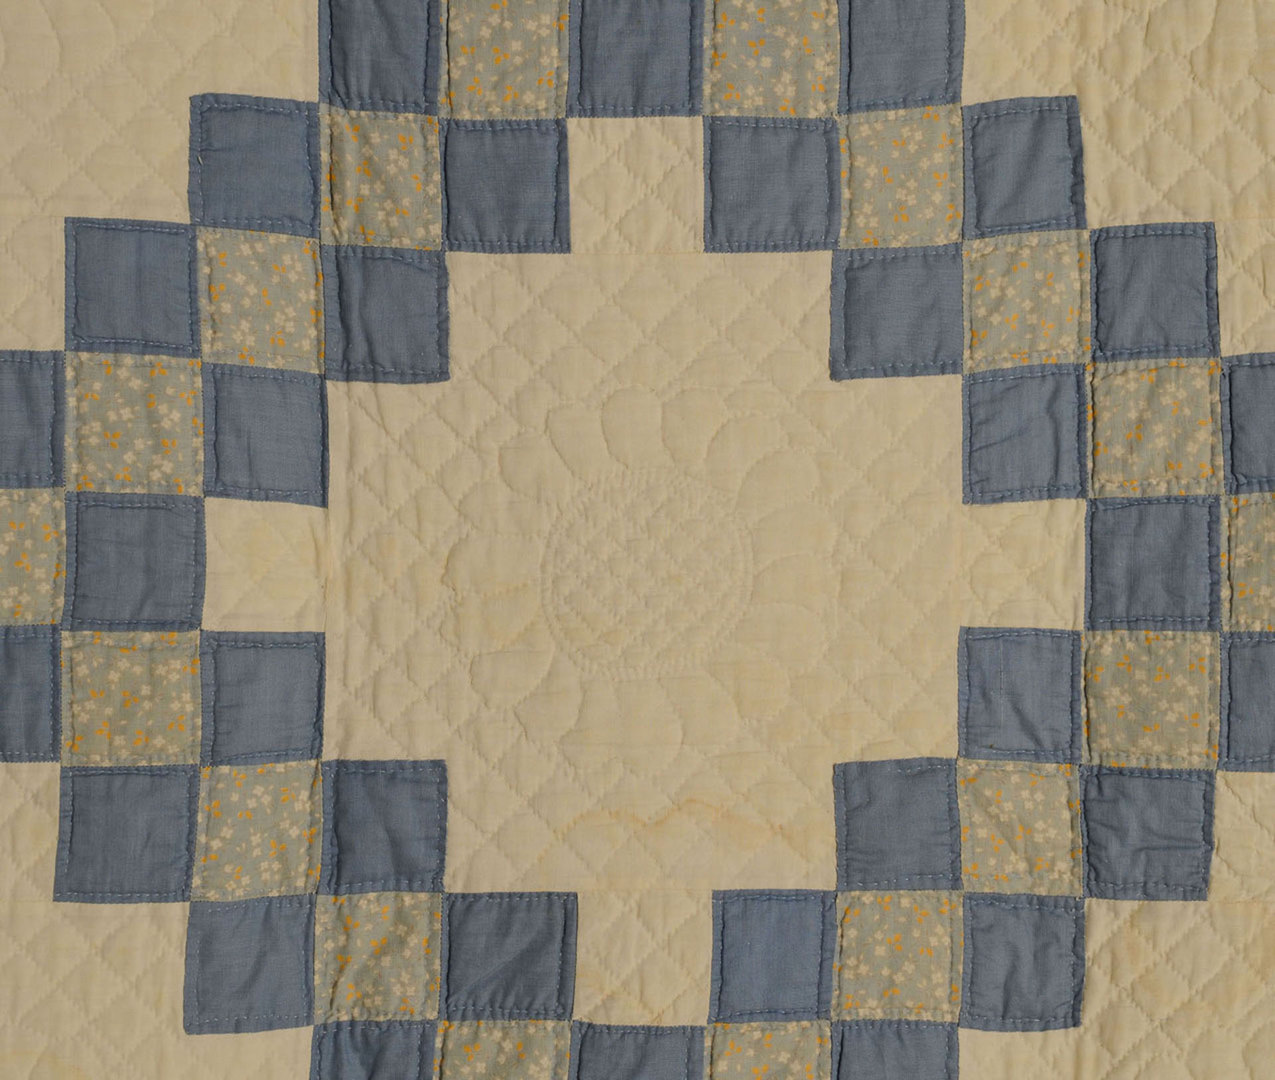 Lot 411: Pr. Double Irish Chain Quilts, NC museum deacess.